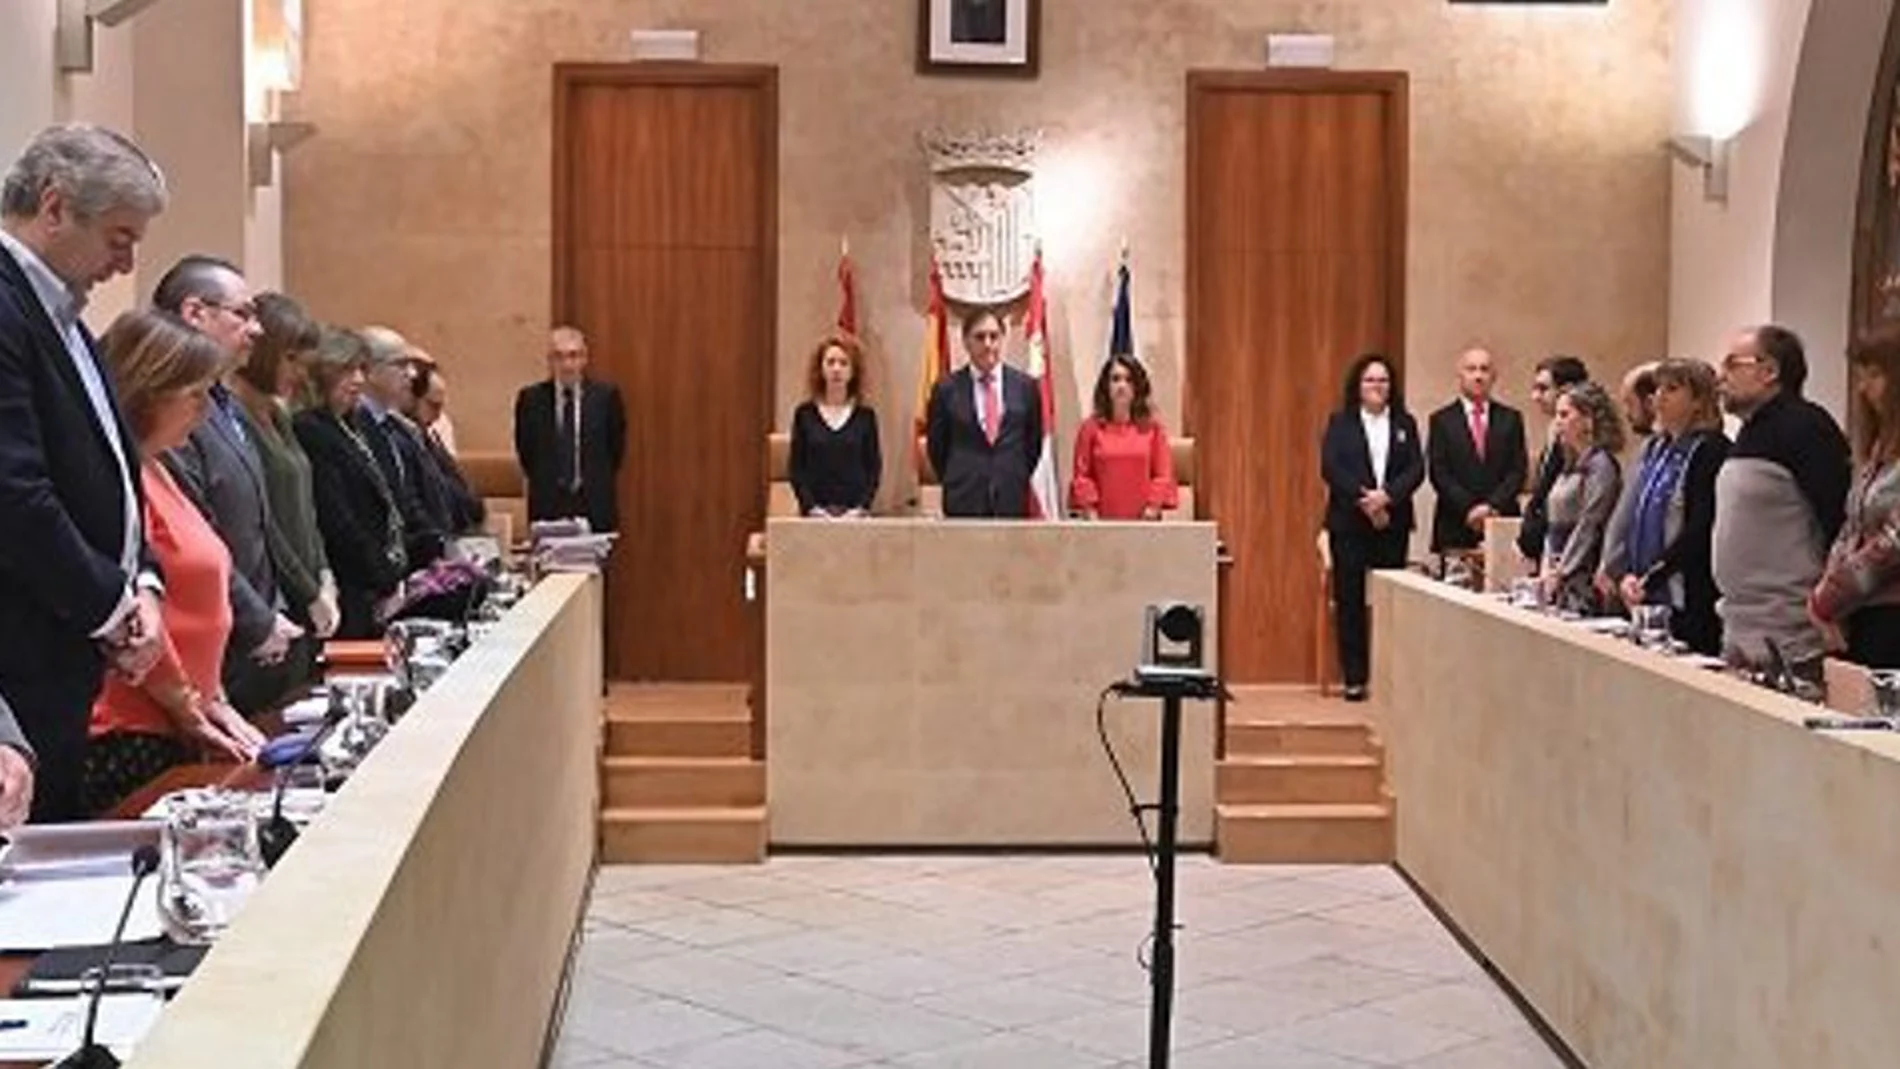 Pleno del Ayuntamiento de Salamanca presidido por el alcalde, Carlos García Carbayo